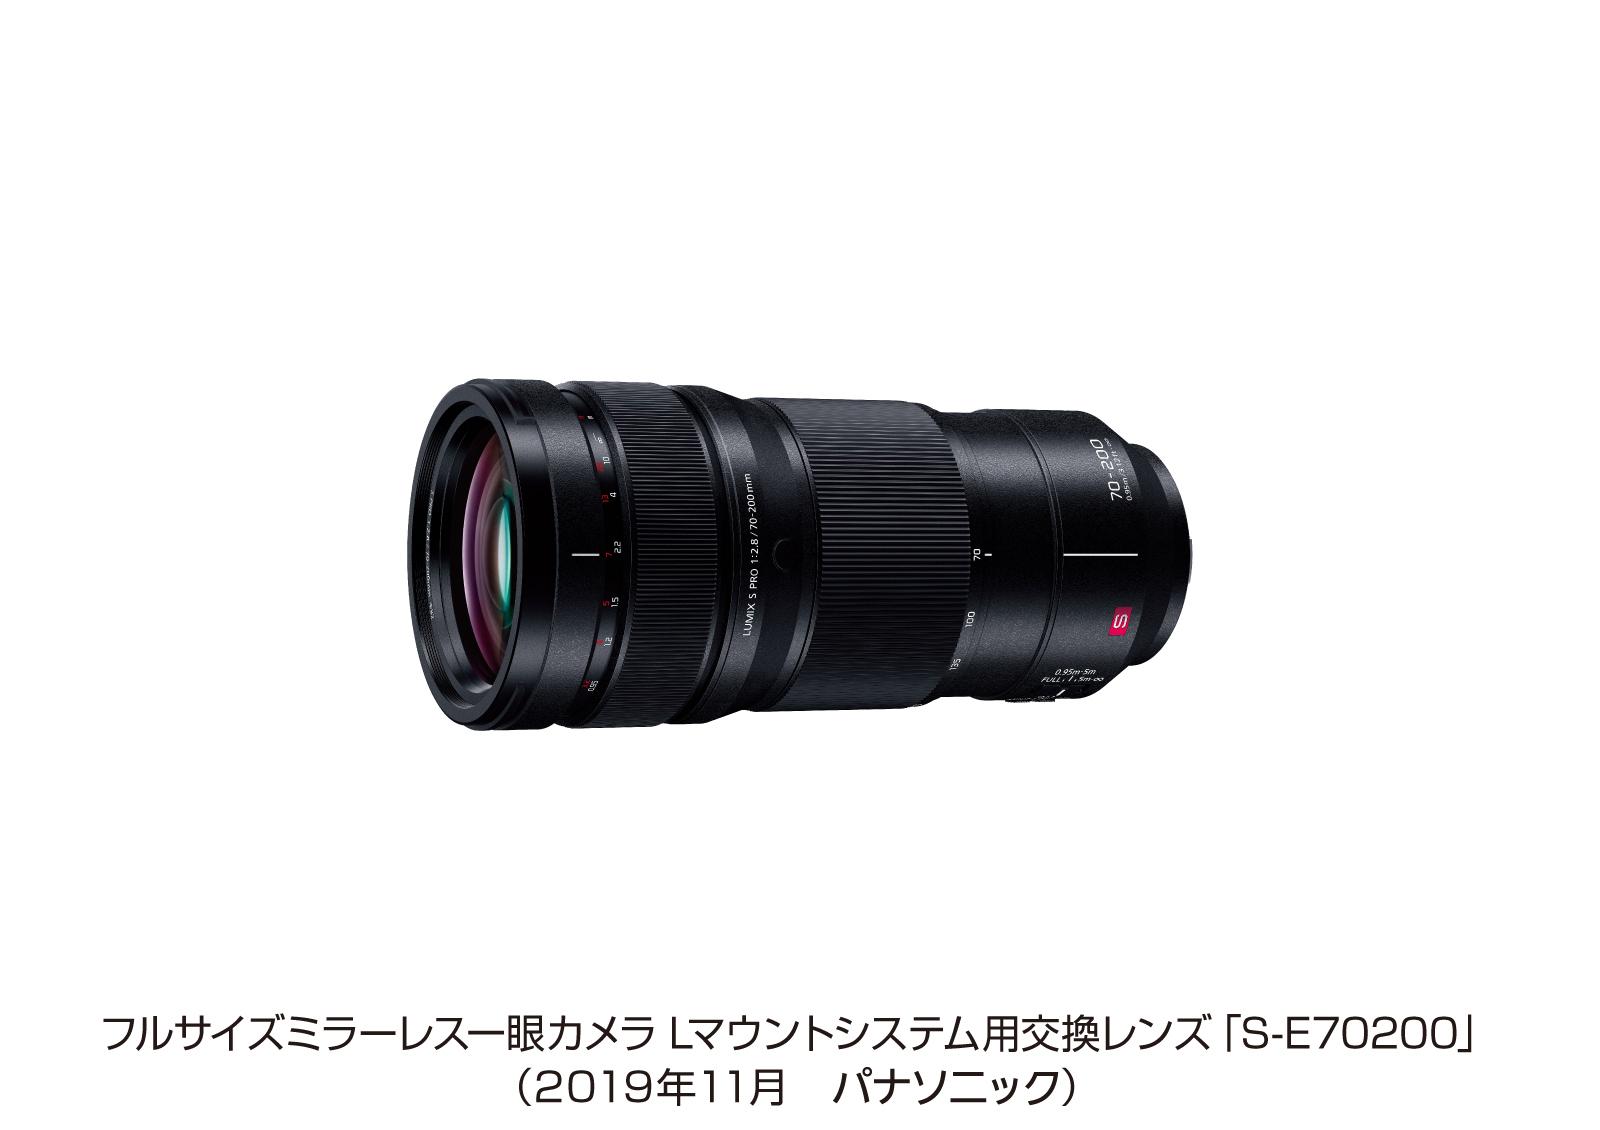 フルサイズミラーレス一眼カメラ Lマウントシステム用交換レンズ「S-E70200」